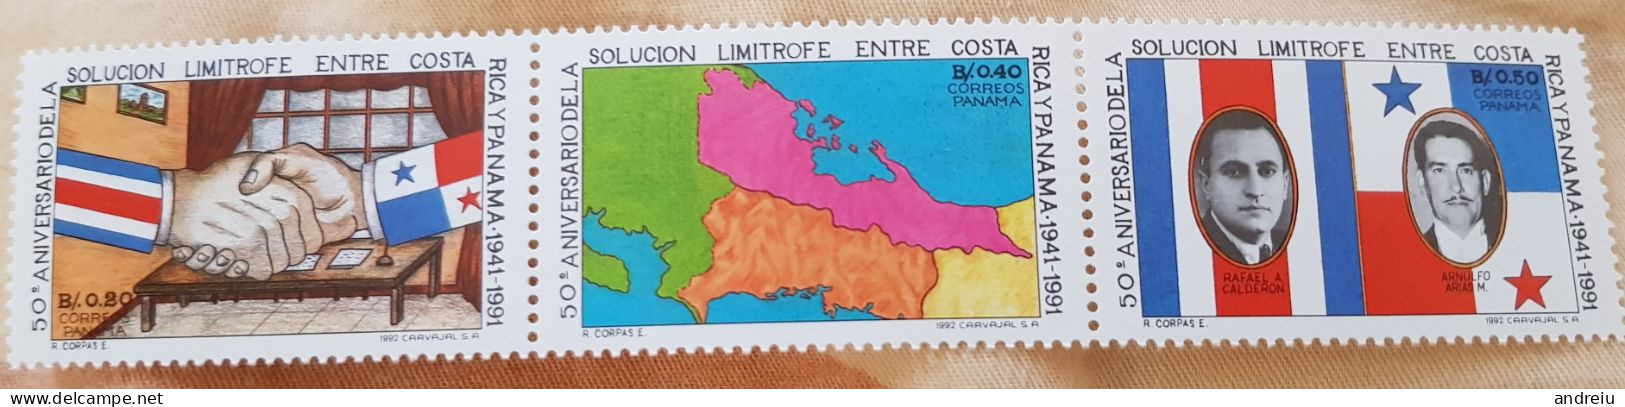 1992 Panama -  3 V., Map BORDER TREATY BETWEEN PANAMA AND COSTA RICA SC#: 793 MNH - Panama